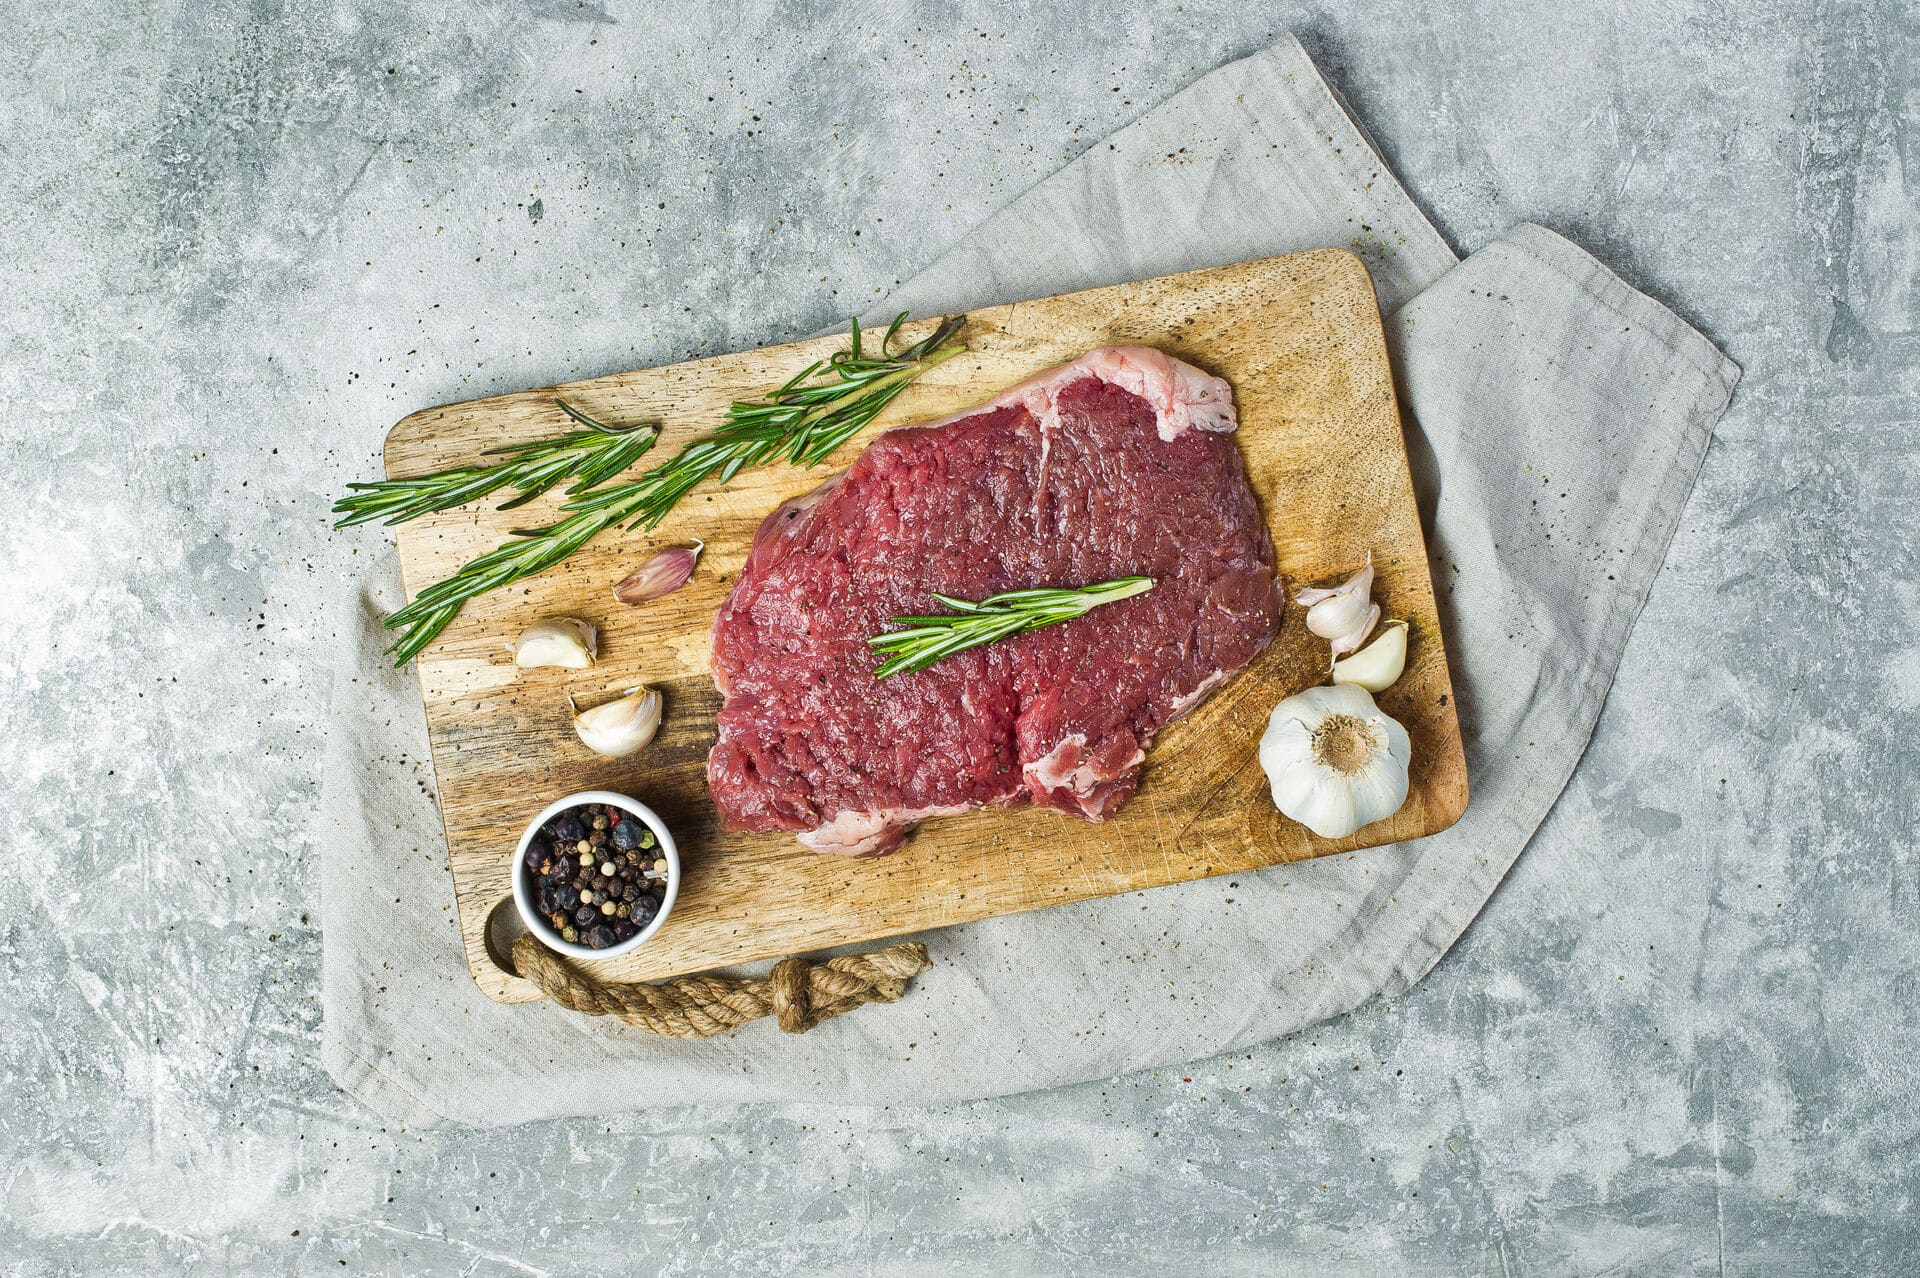 rohes Flank Steak auf einem Steinbrett mit Rosmarin dekoriert